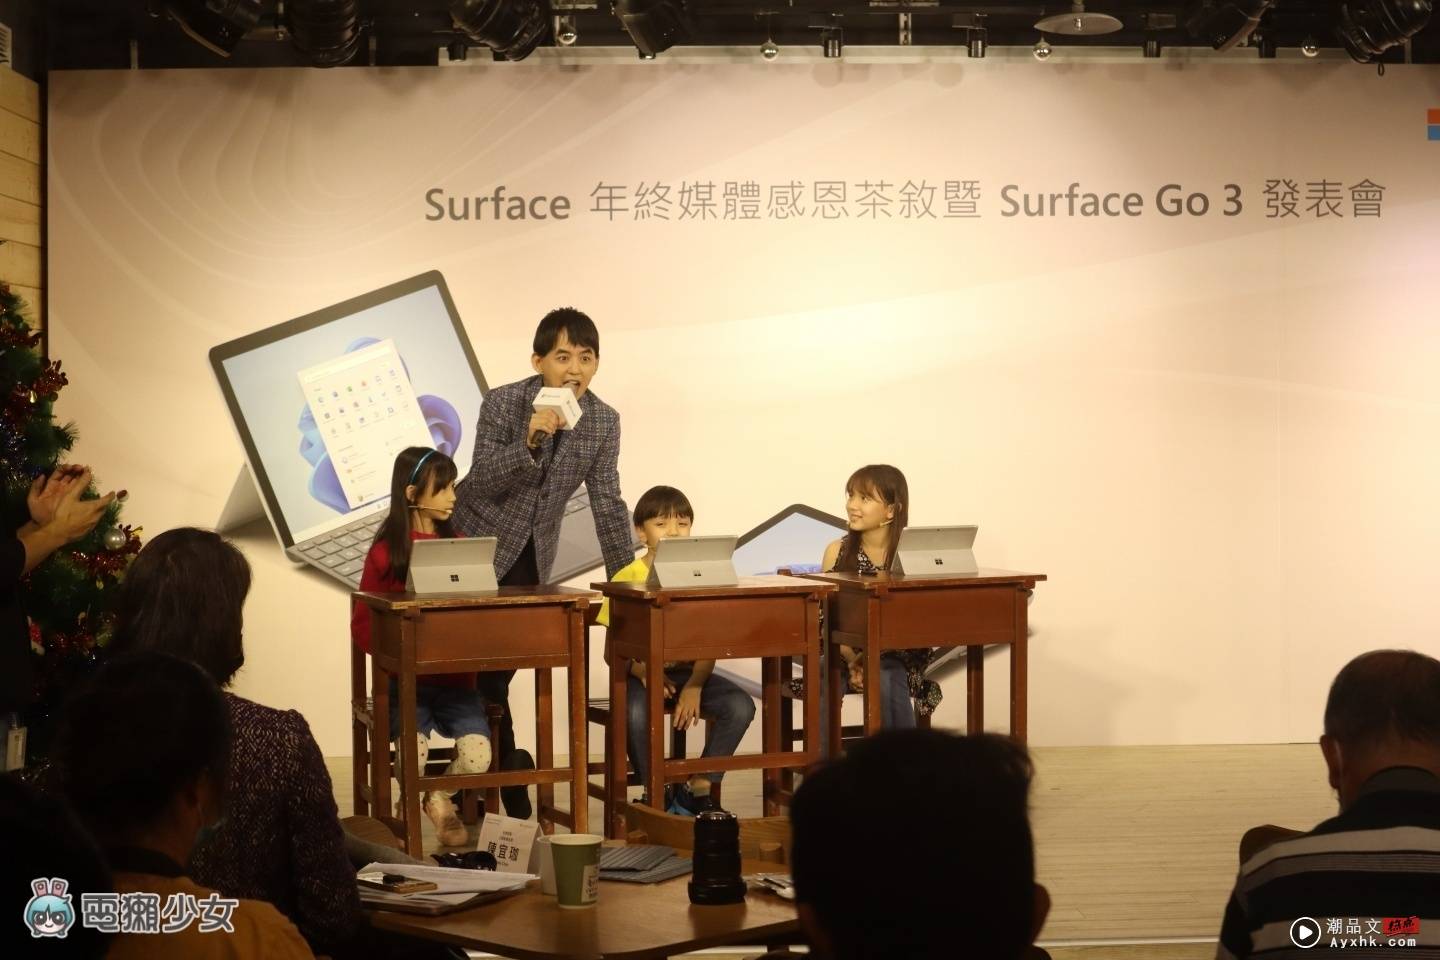 出门｜是笔电也是平板！Surface Go 3 二合一设计正式登台 还附一支笔可让你随时纪录！ 数码科技 图10张